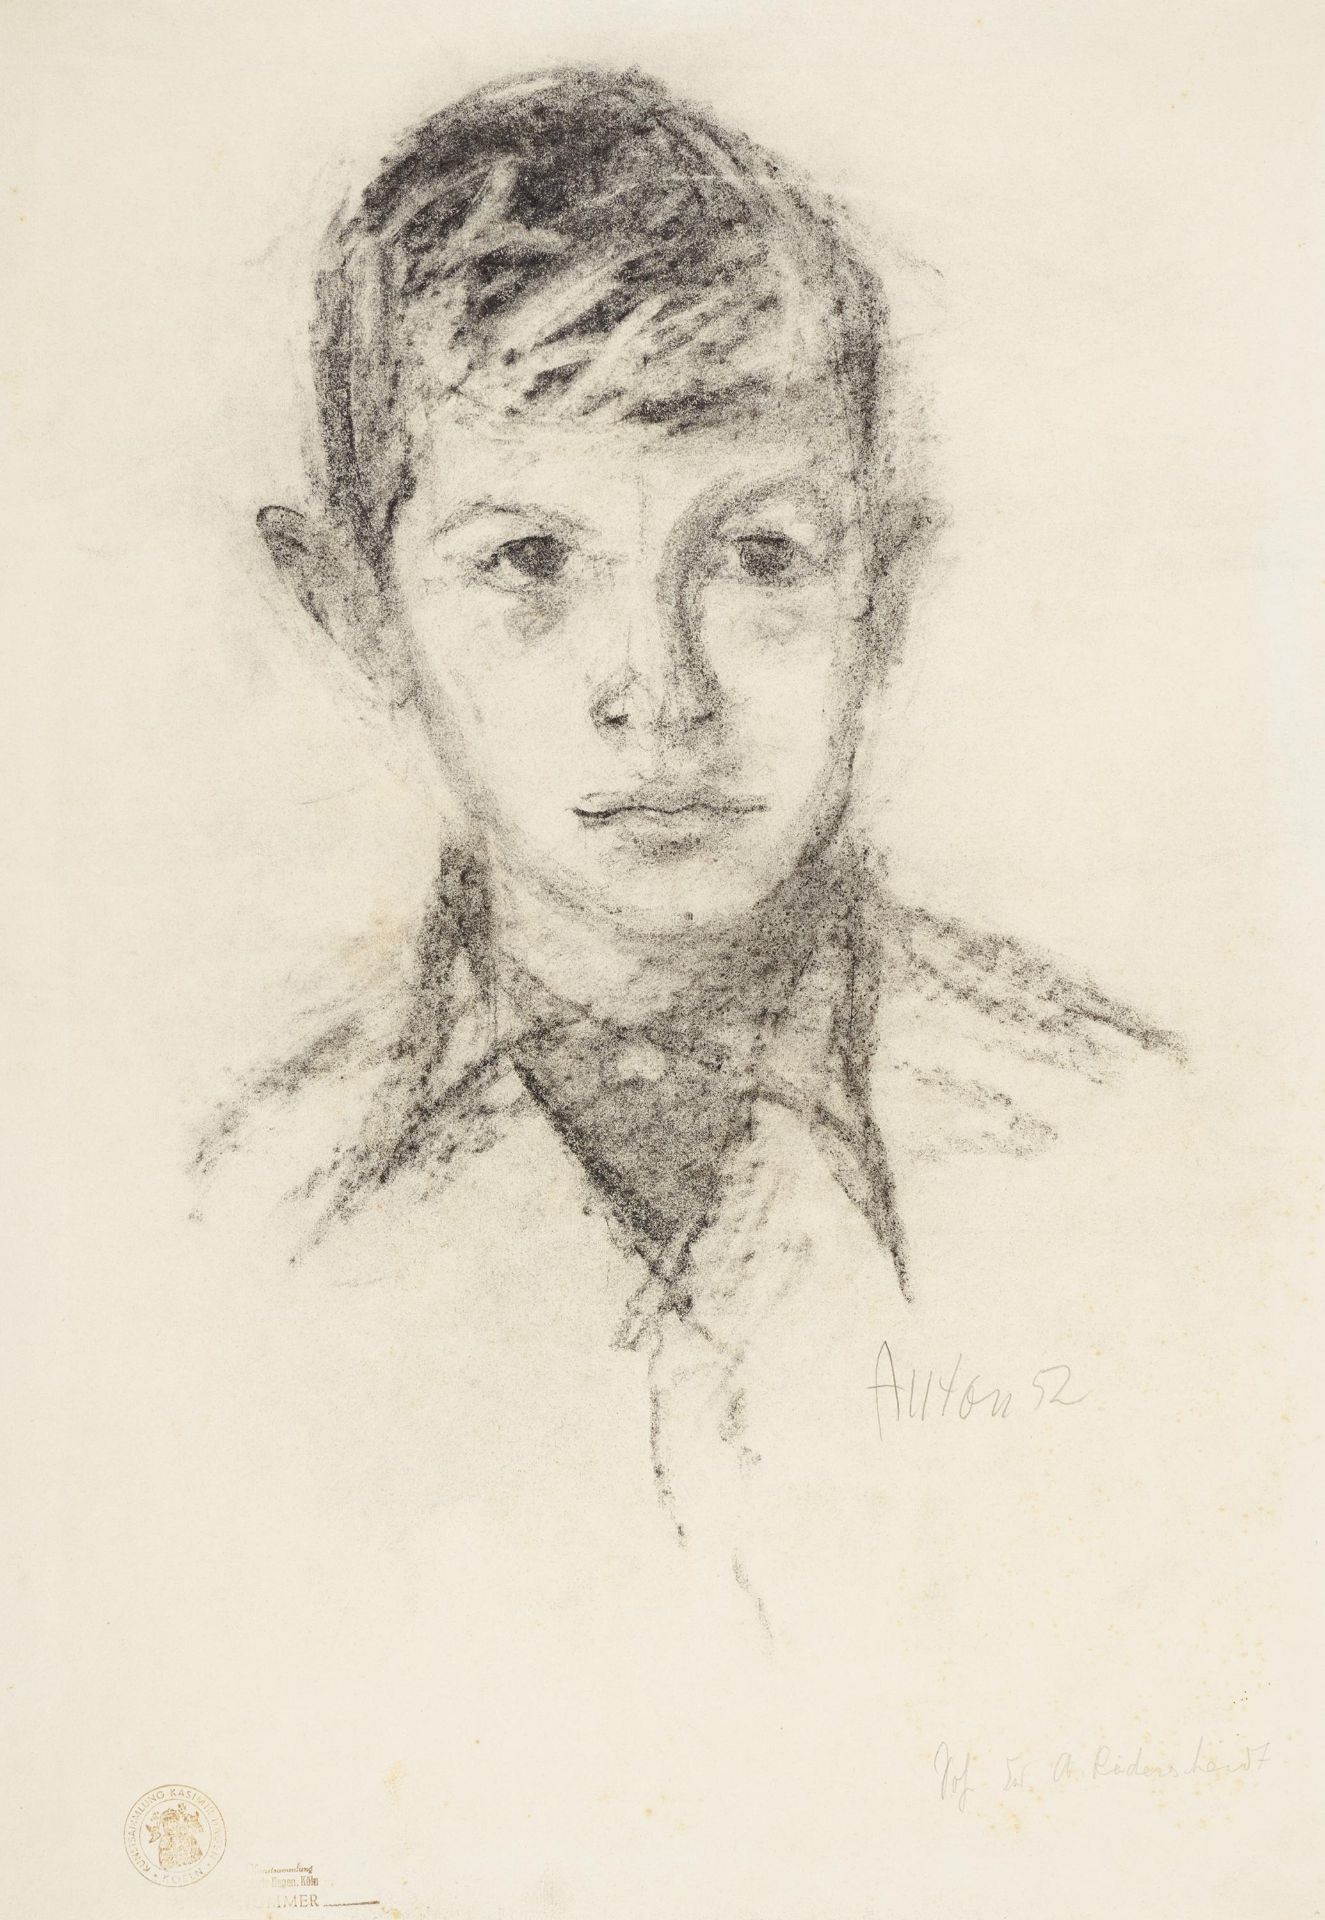 Räderscheidt, AntonKöln 1892 - 1970Porträt eines Jungen. 1952. Kohlezeichnung auf Hahnemühle (